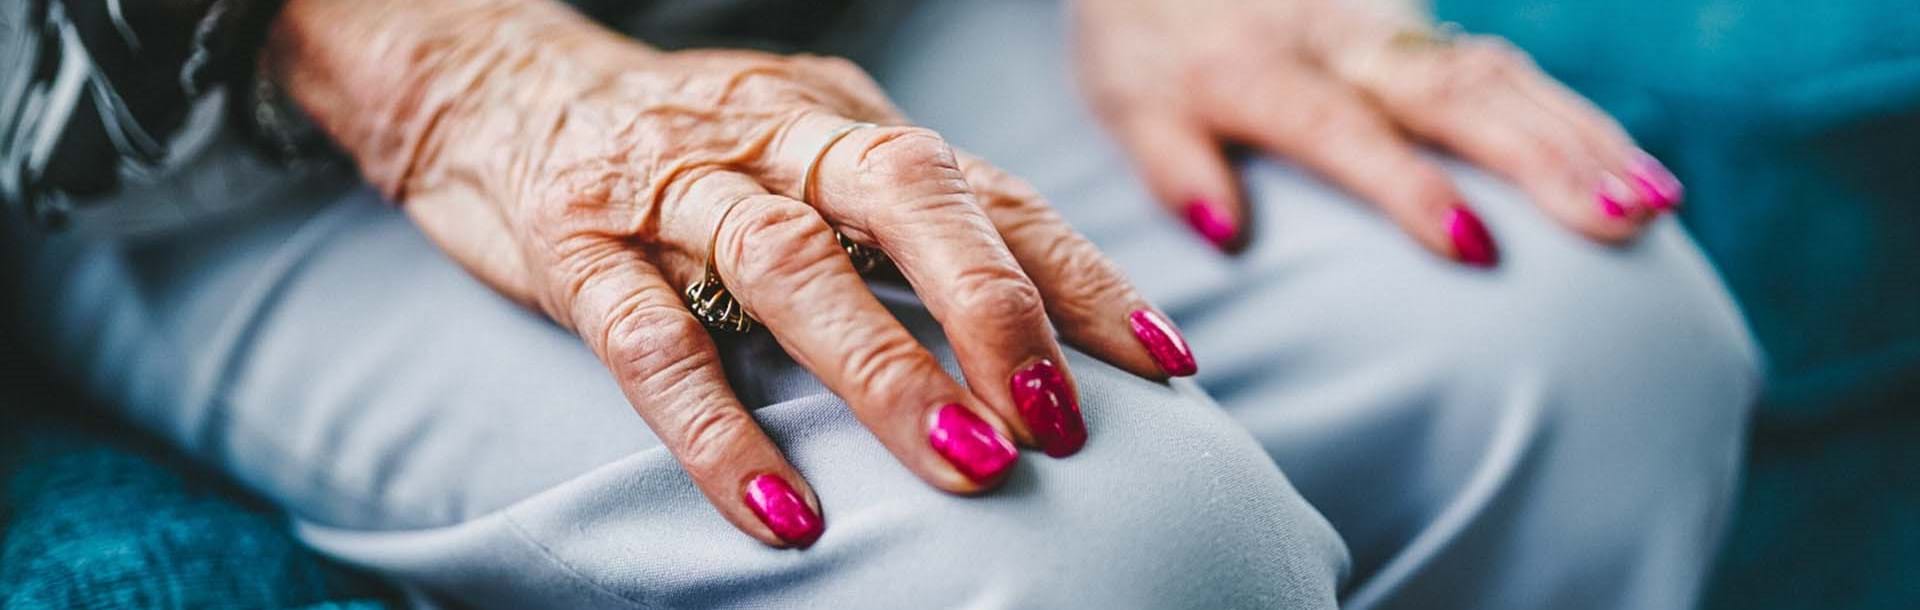 Female blind veteran's hands resting on her lap